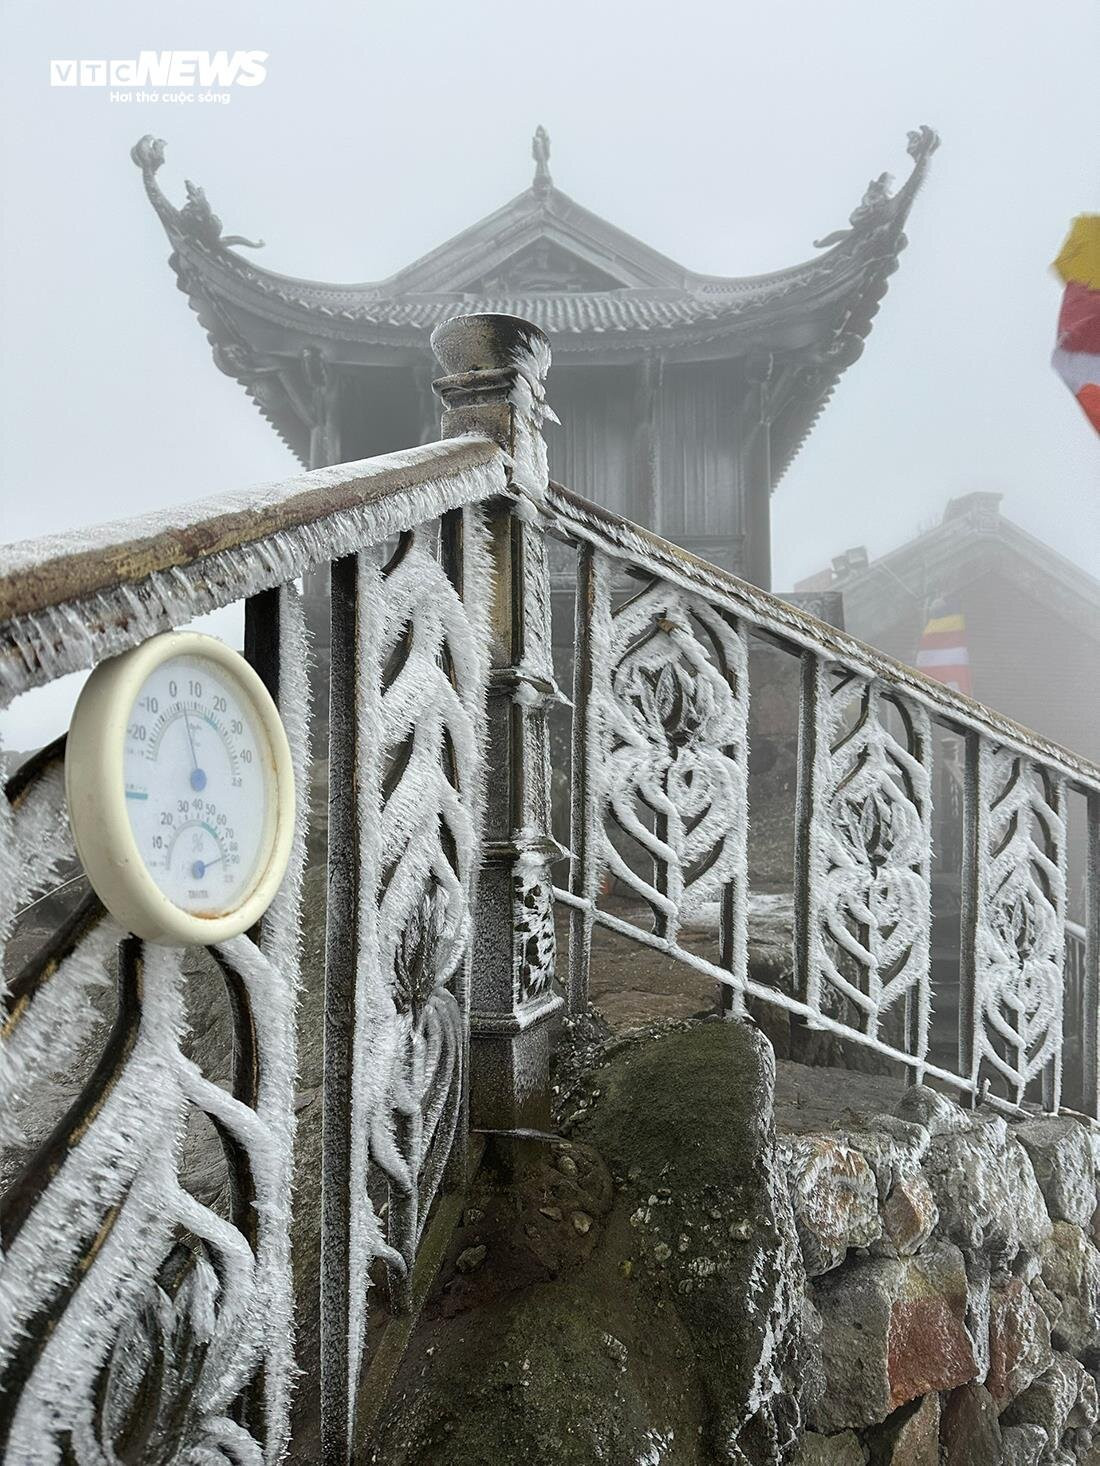 Băng giá xuất hiện trắng xoá trên chùa Đồng trong thời tiết 0 độ C.